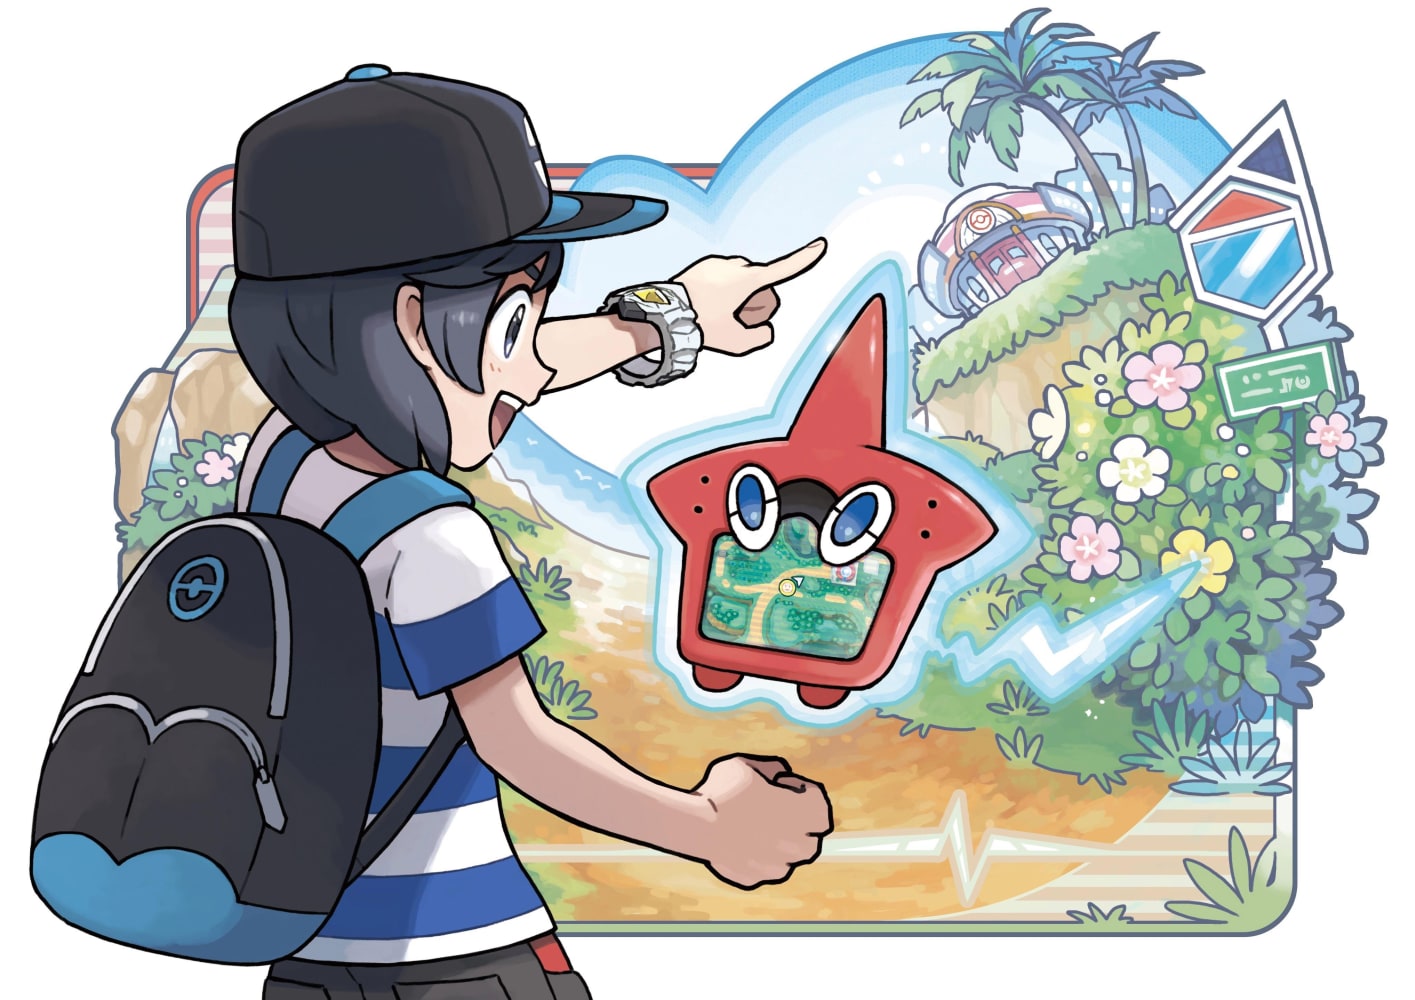 Saiba como conseguir Pokémon Shiny inicial em Pokémon Sun e Moon, Dicas e  Tutoriais